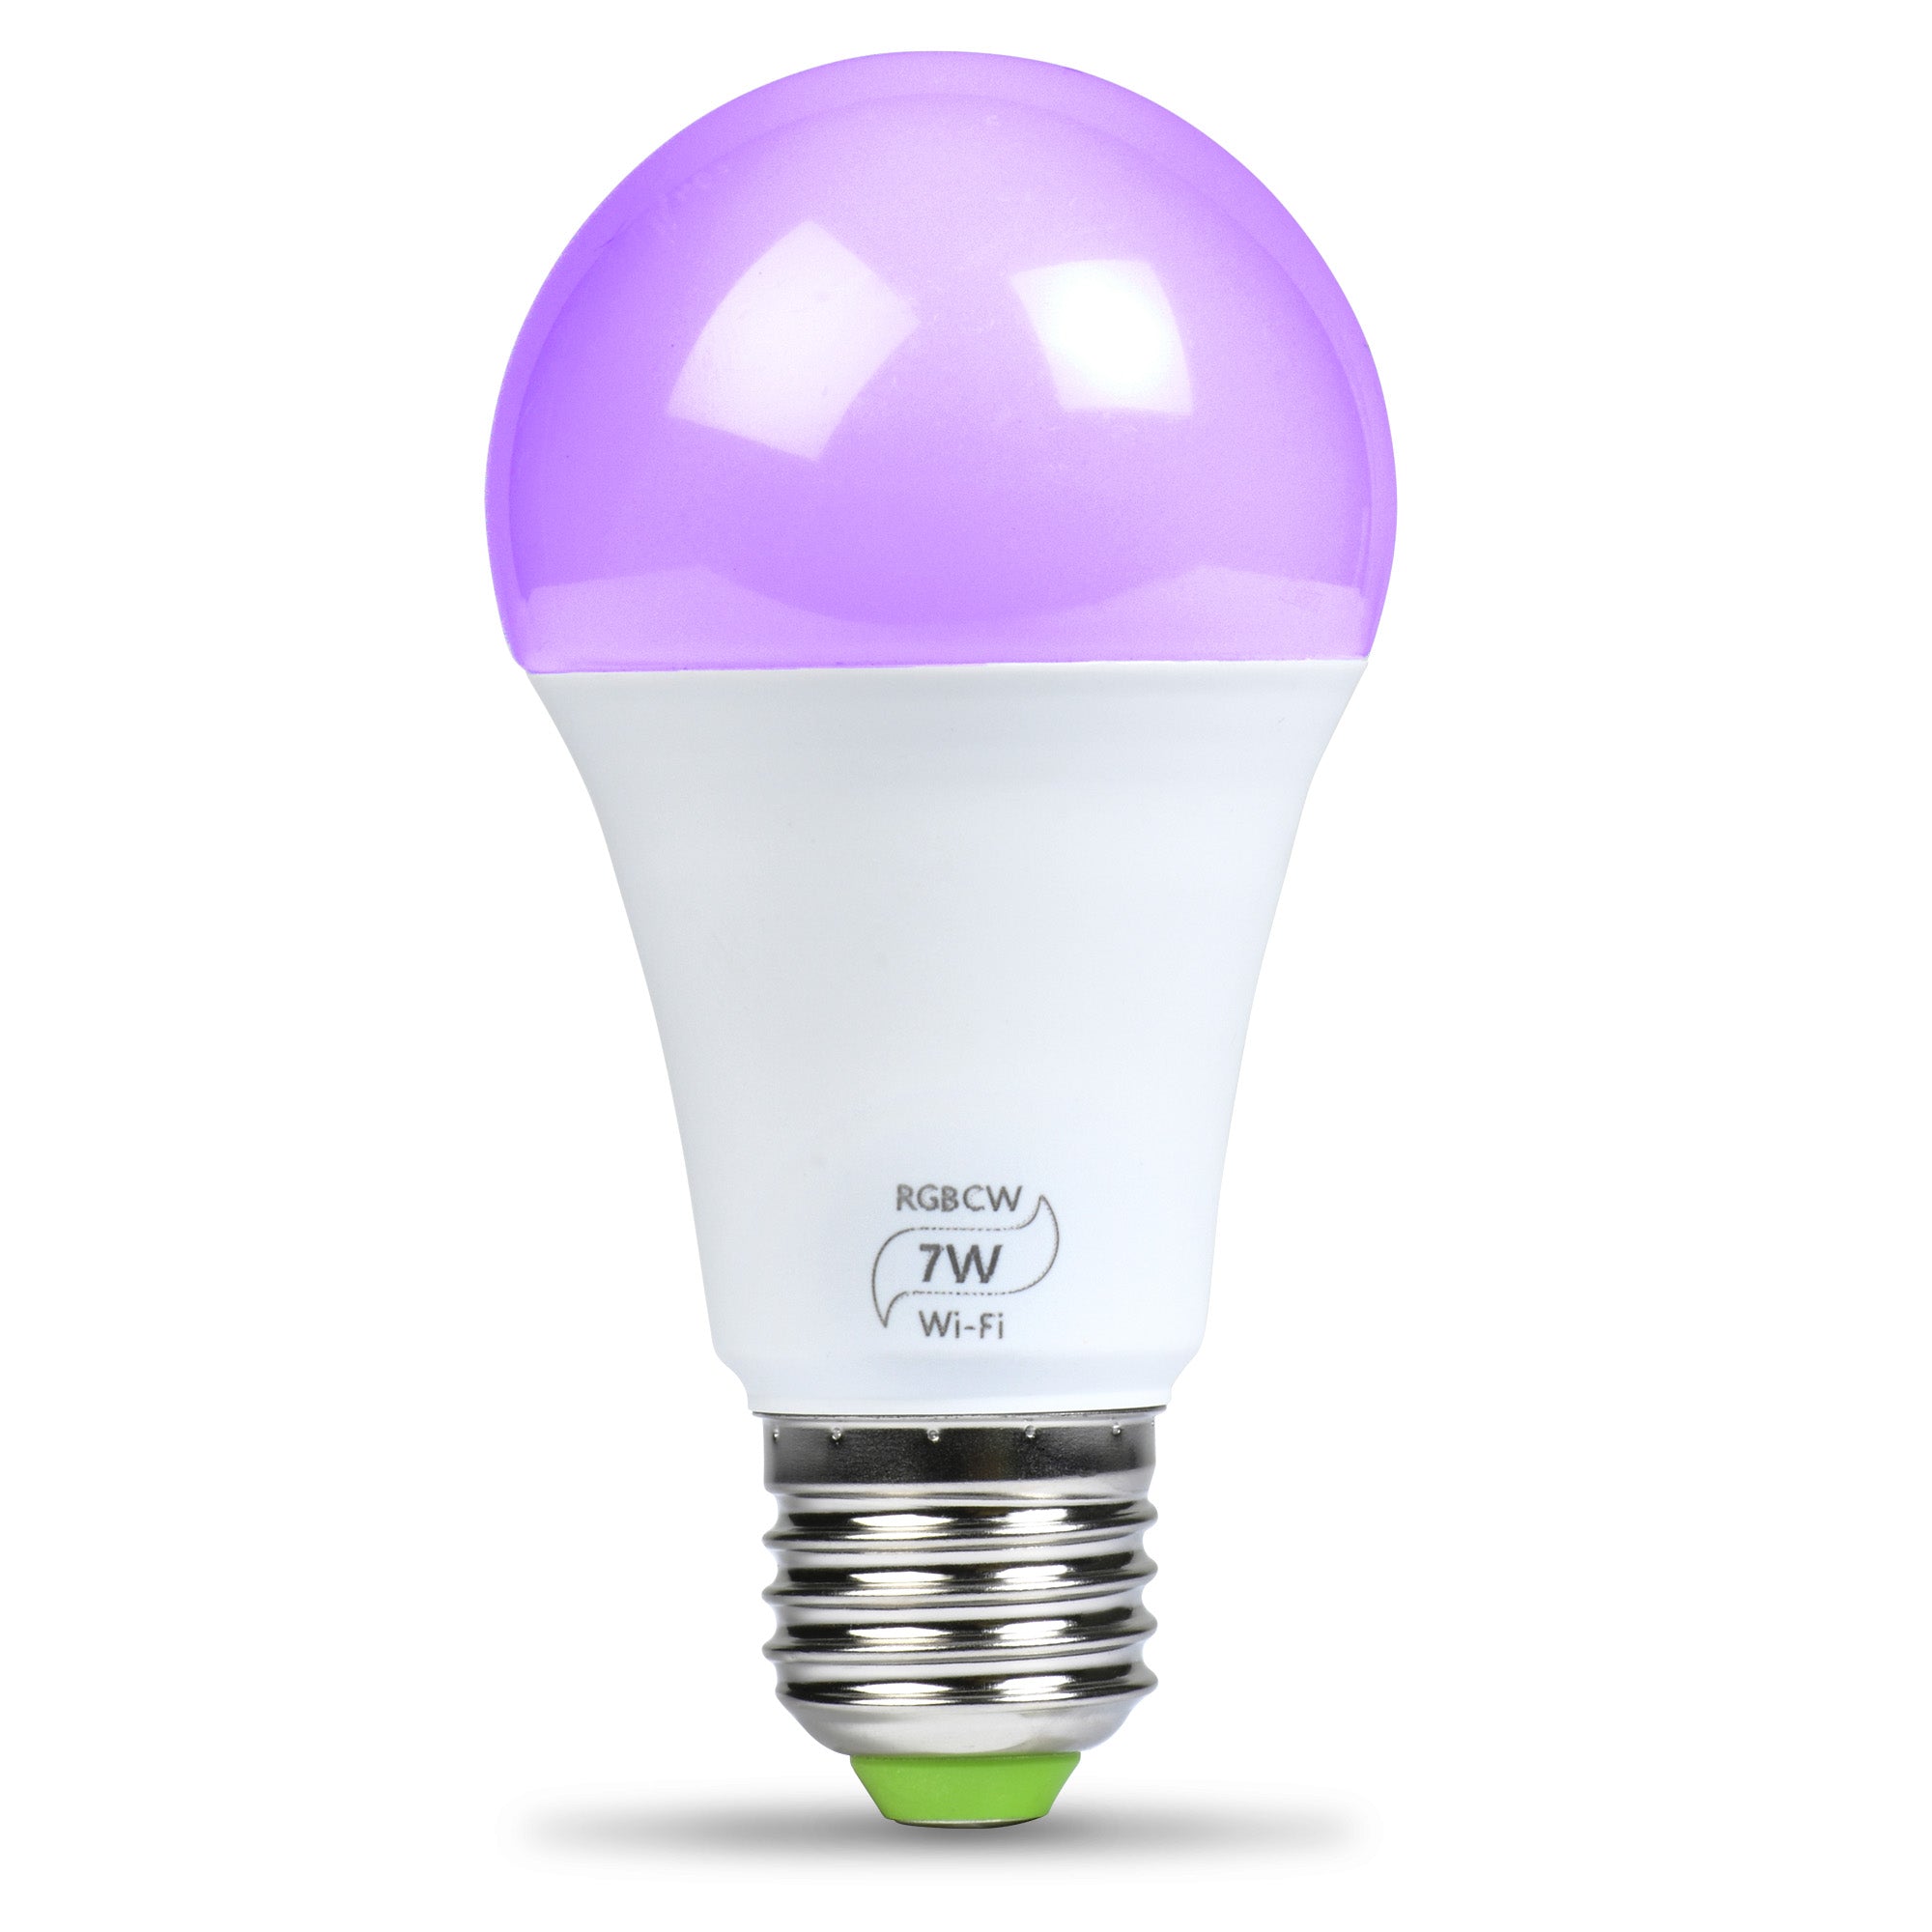 Flux LED Light Bulb – Flux Smart Lighting